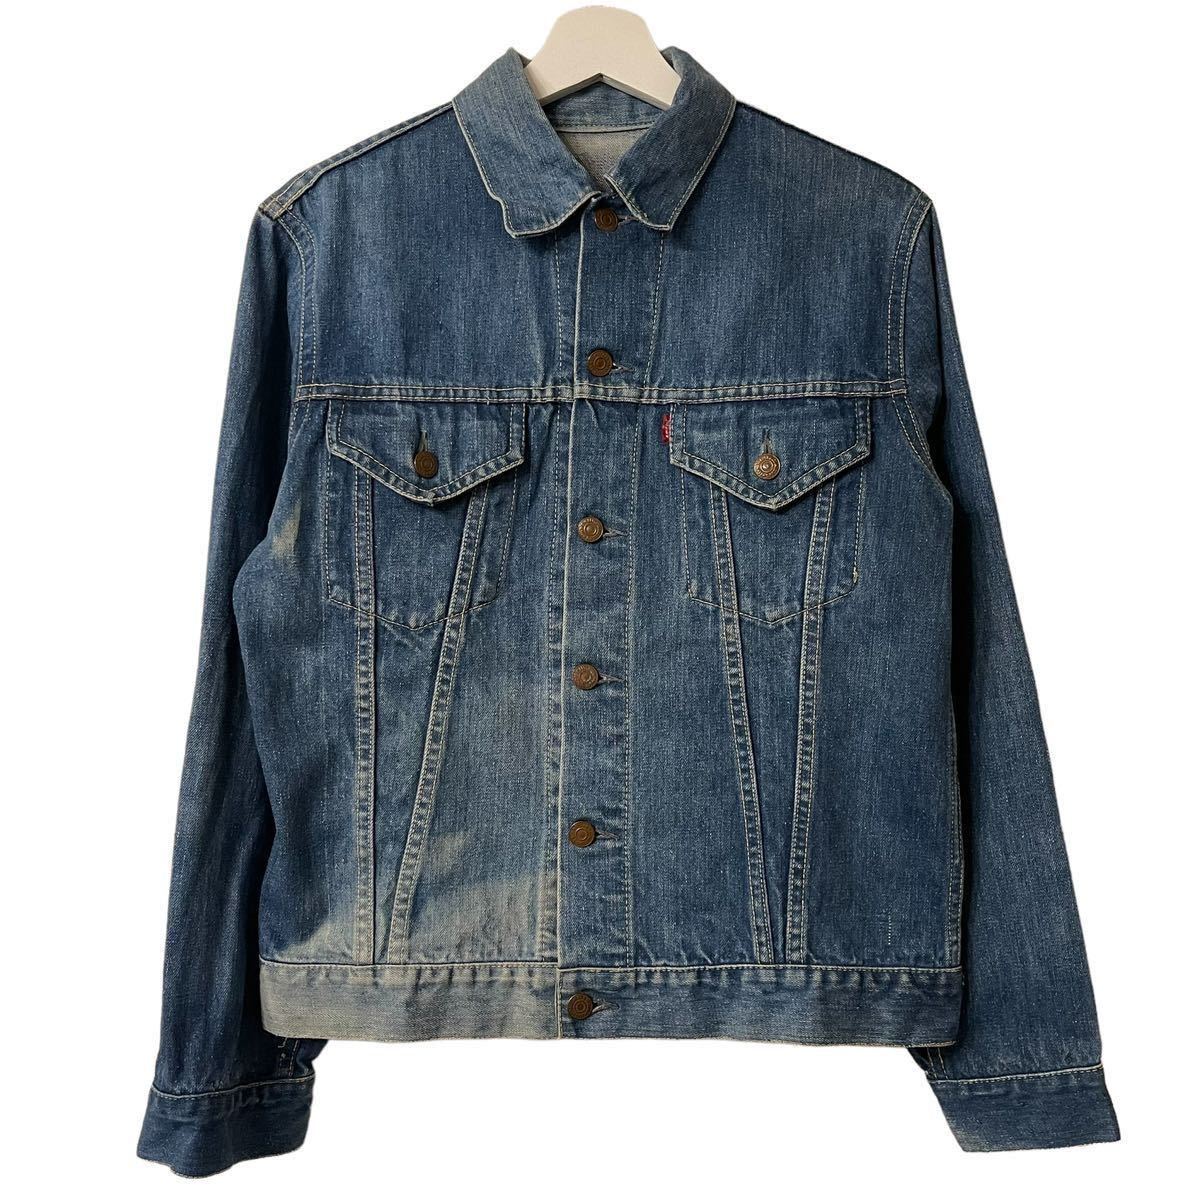 正規 60's Levi's 70505 E tracker jacket made in USA 【38】デニム